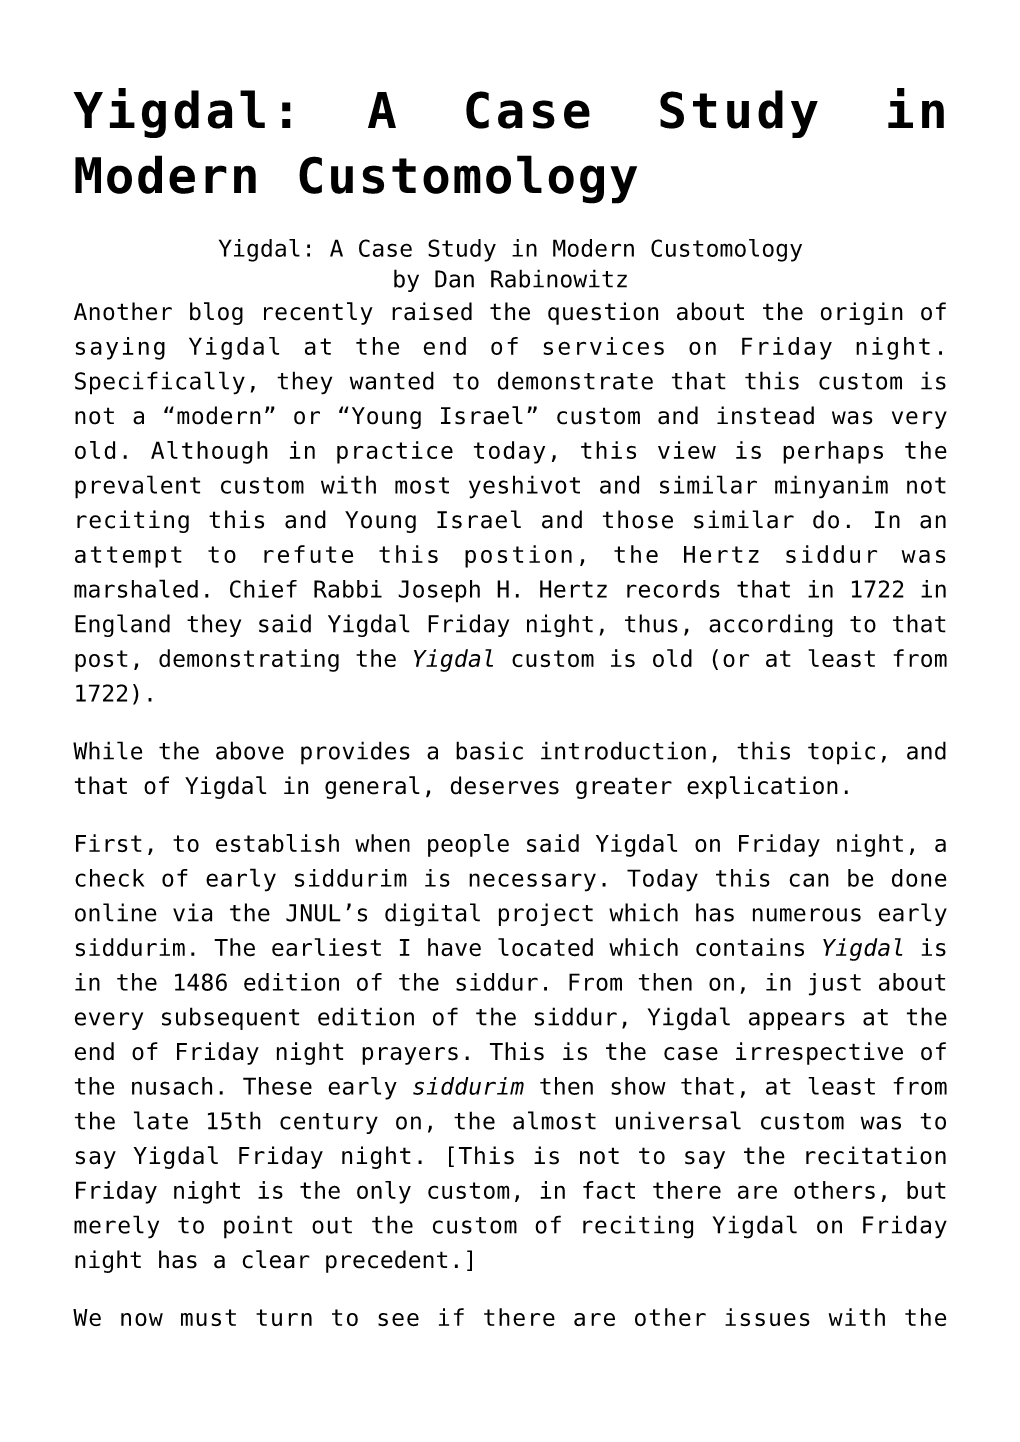 Yigdal: a Case Study in Modern Customology